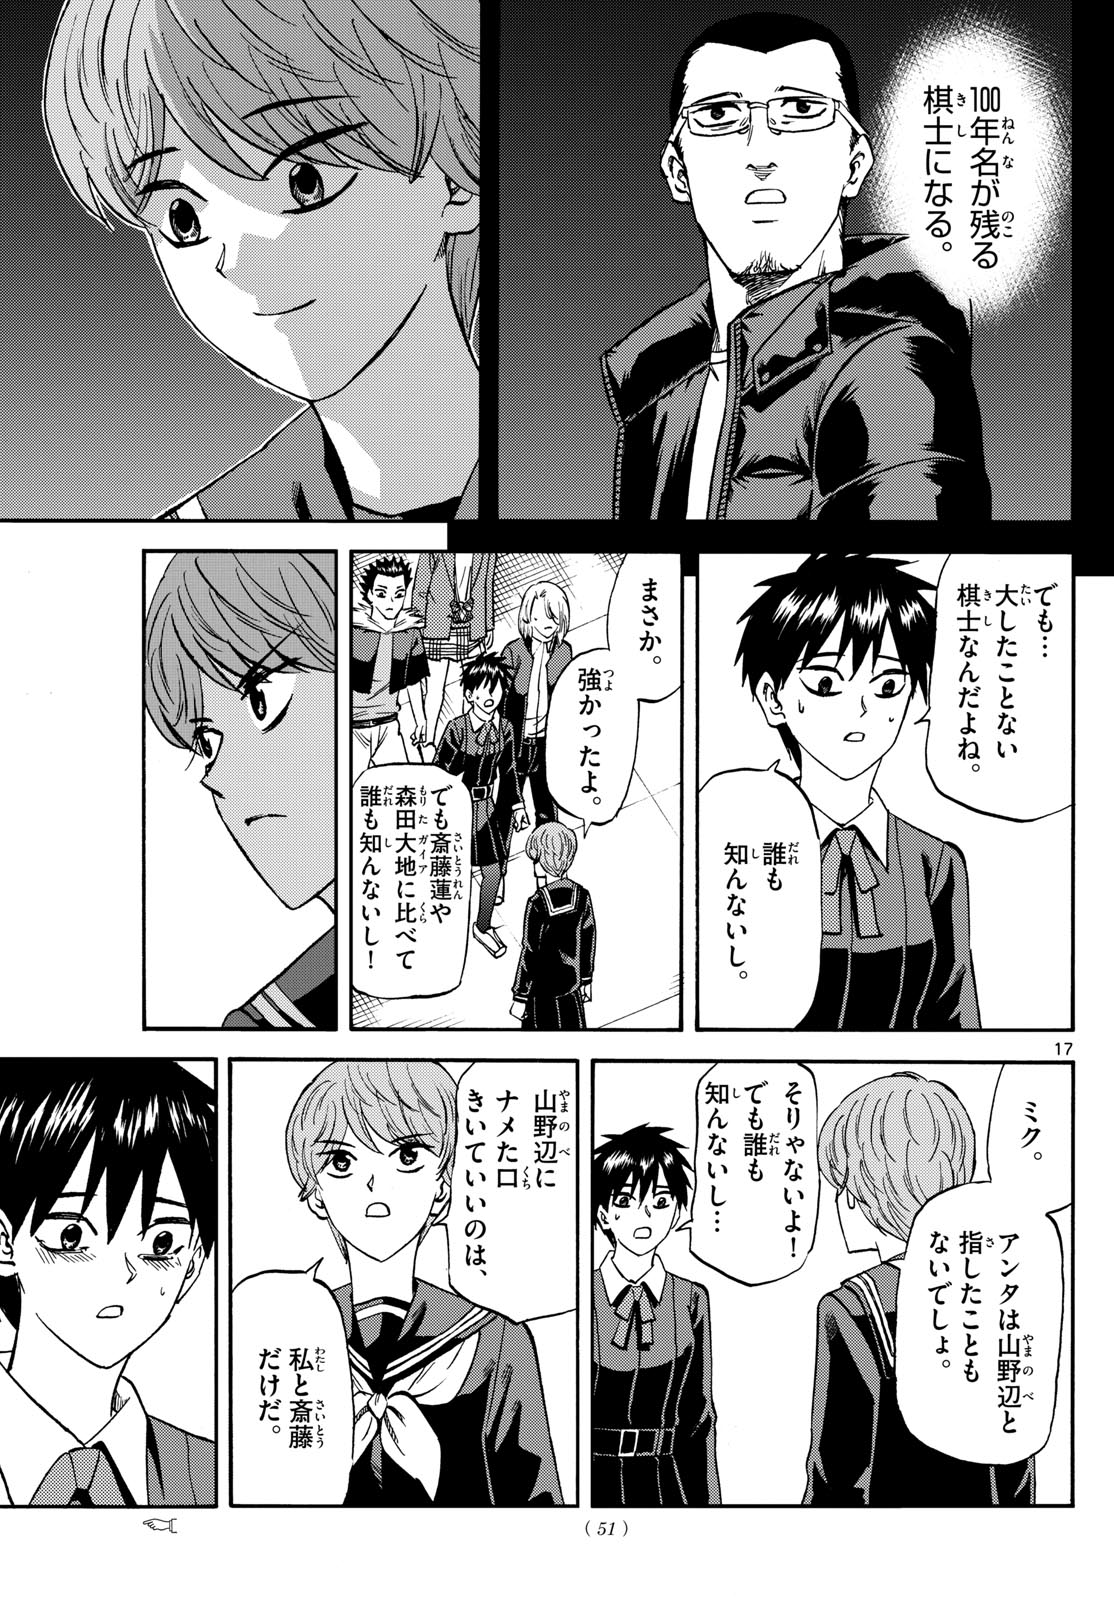 Tatsu to Ichigo - Chapter 187 - Page 17